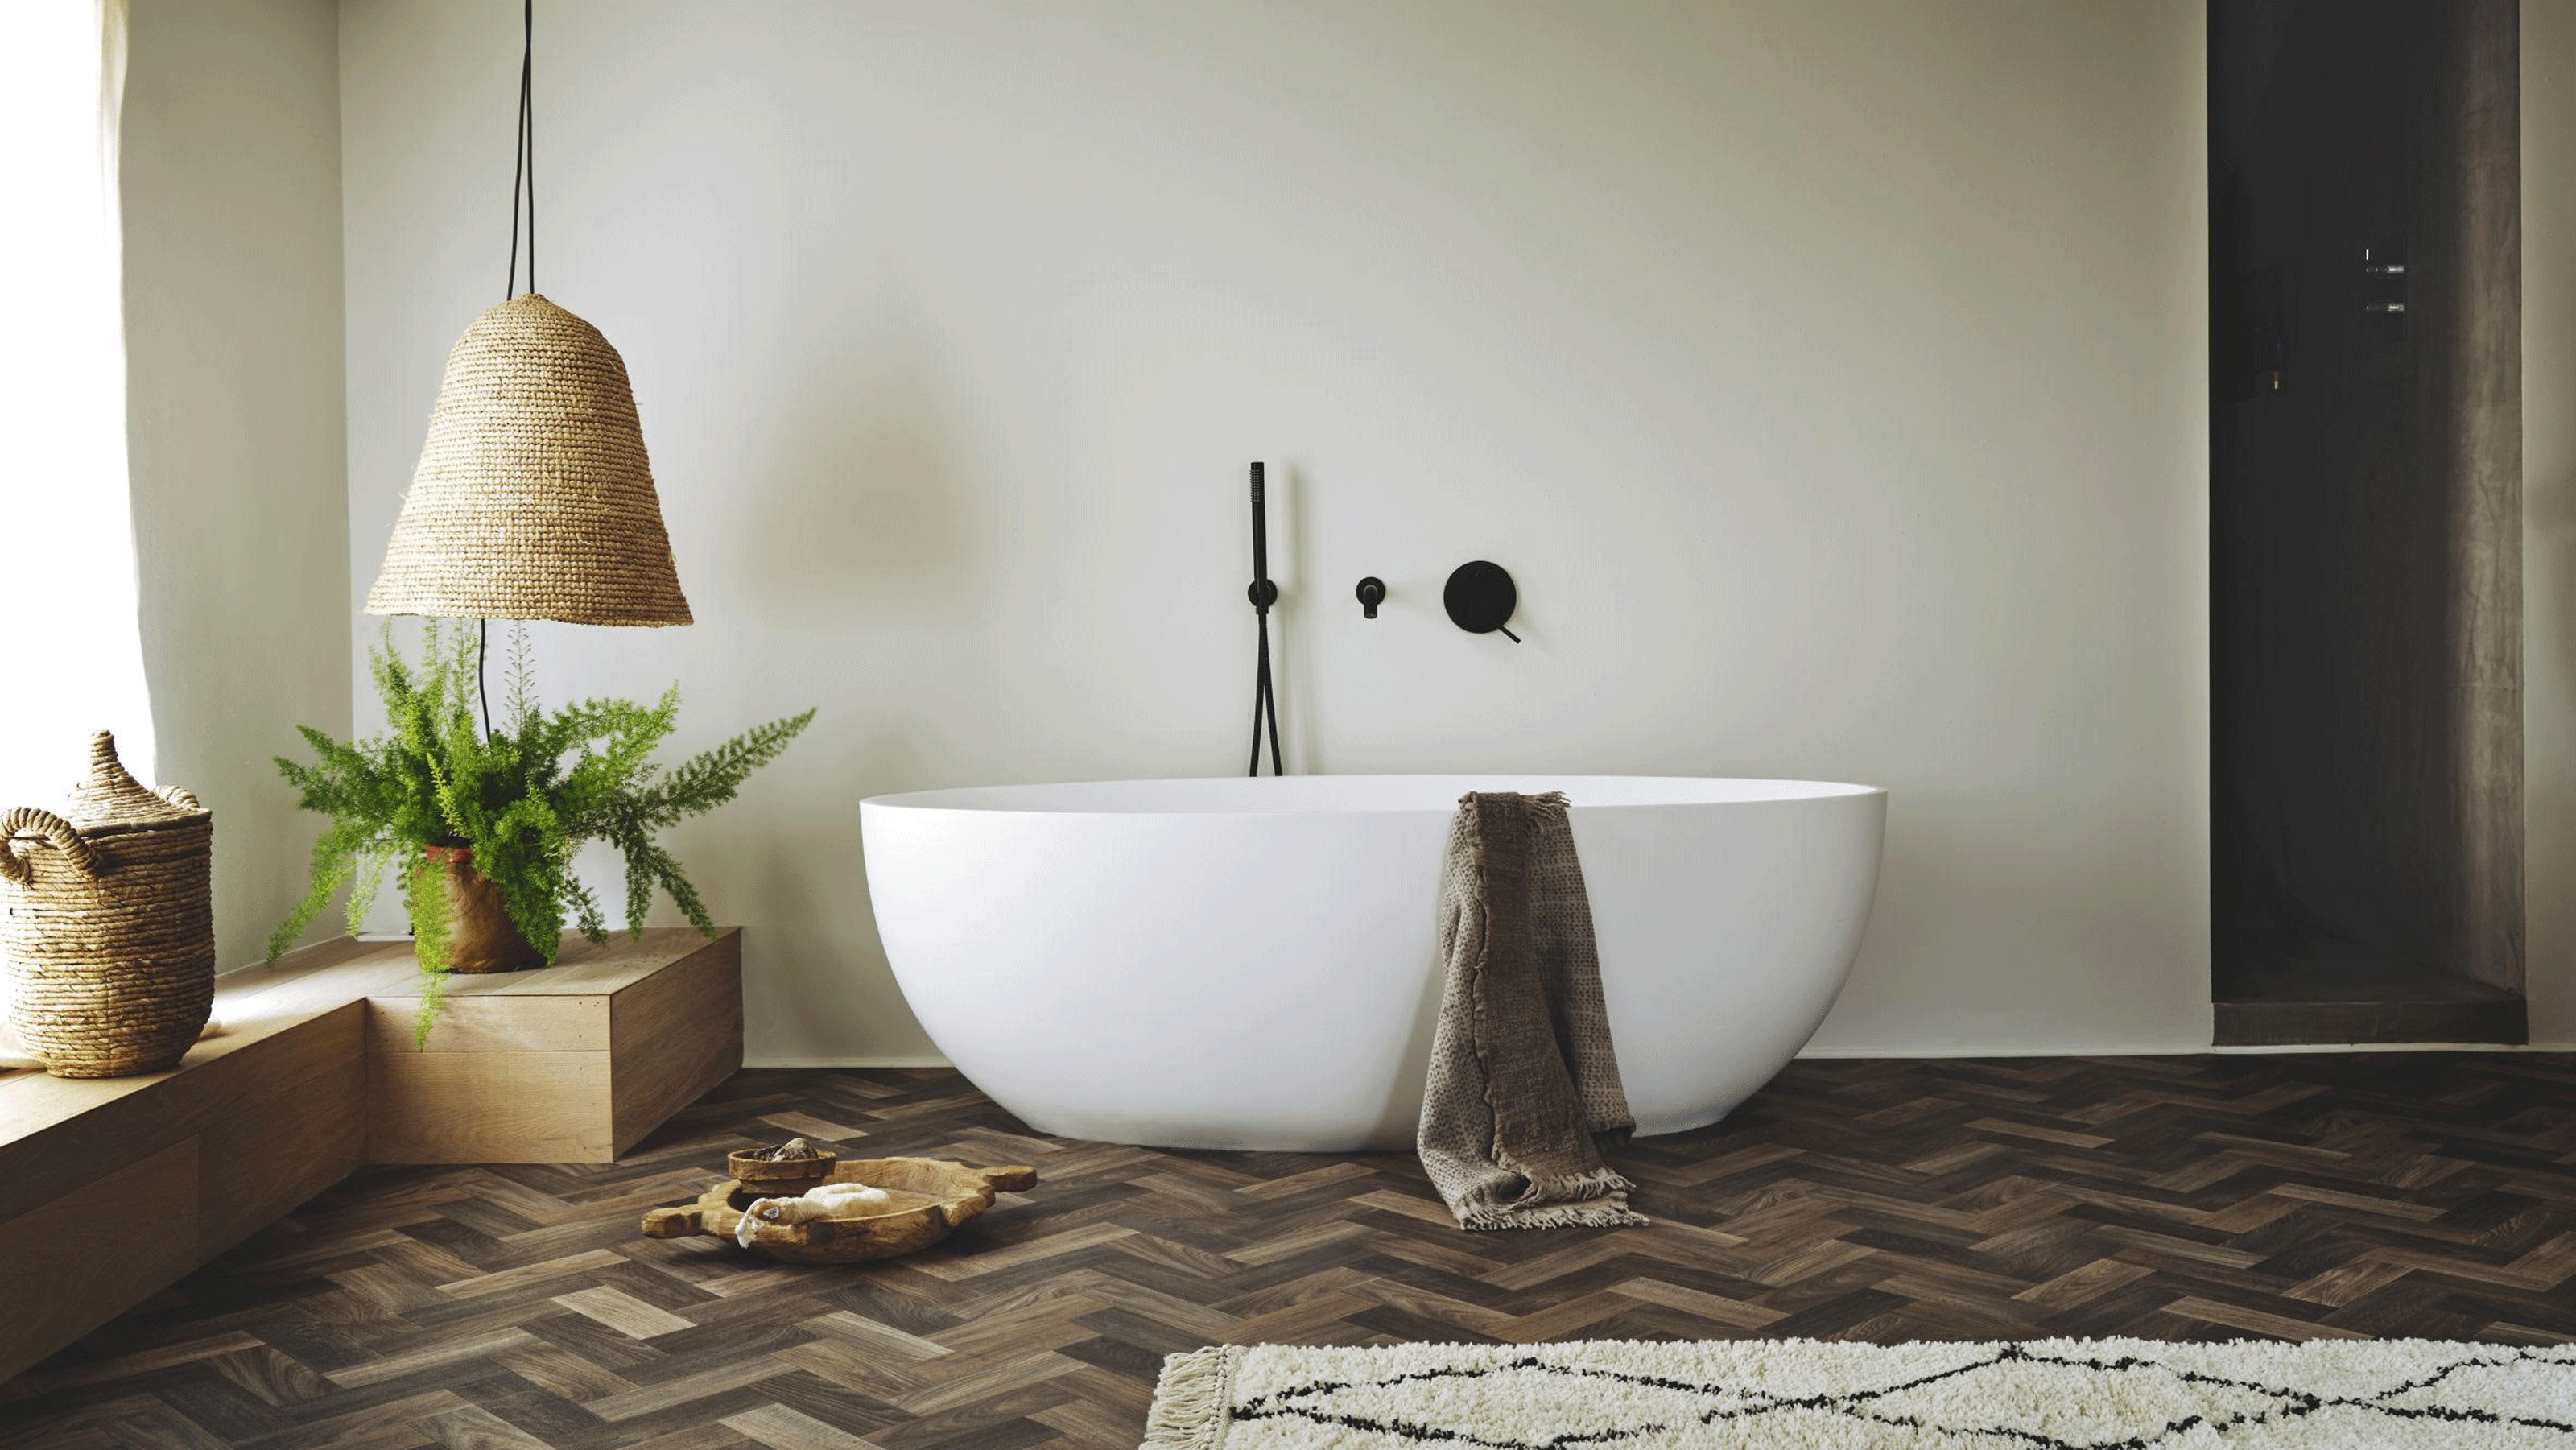 Freestanding bath in bathroom with vinyl herringbone style flooring